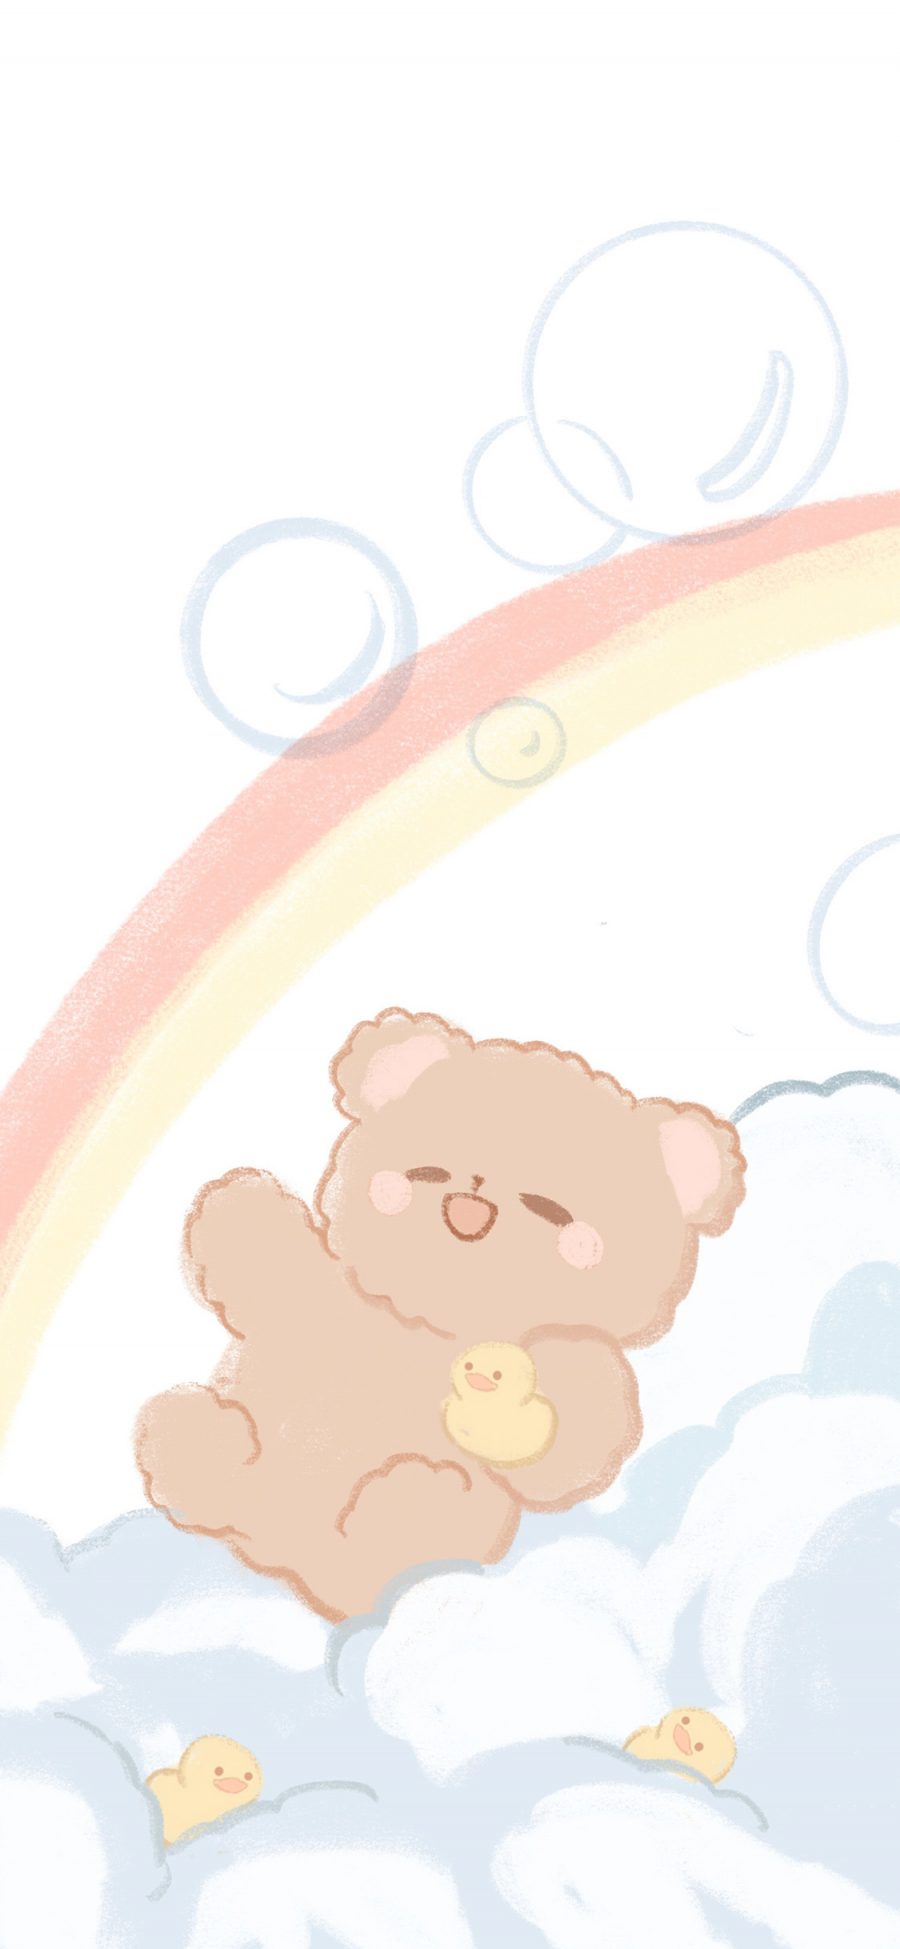 [2436×1125]卡通 小熊 彩虹 泡泡 苹果手机动漫壁纸图片